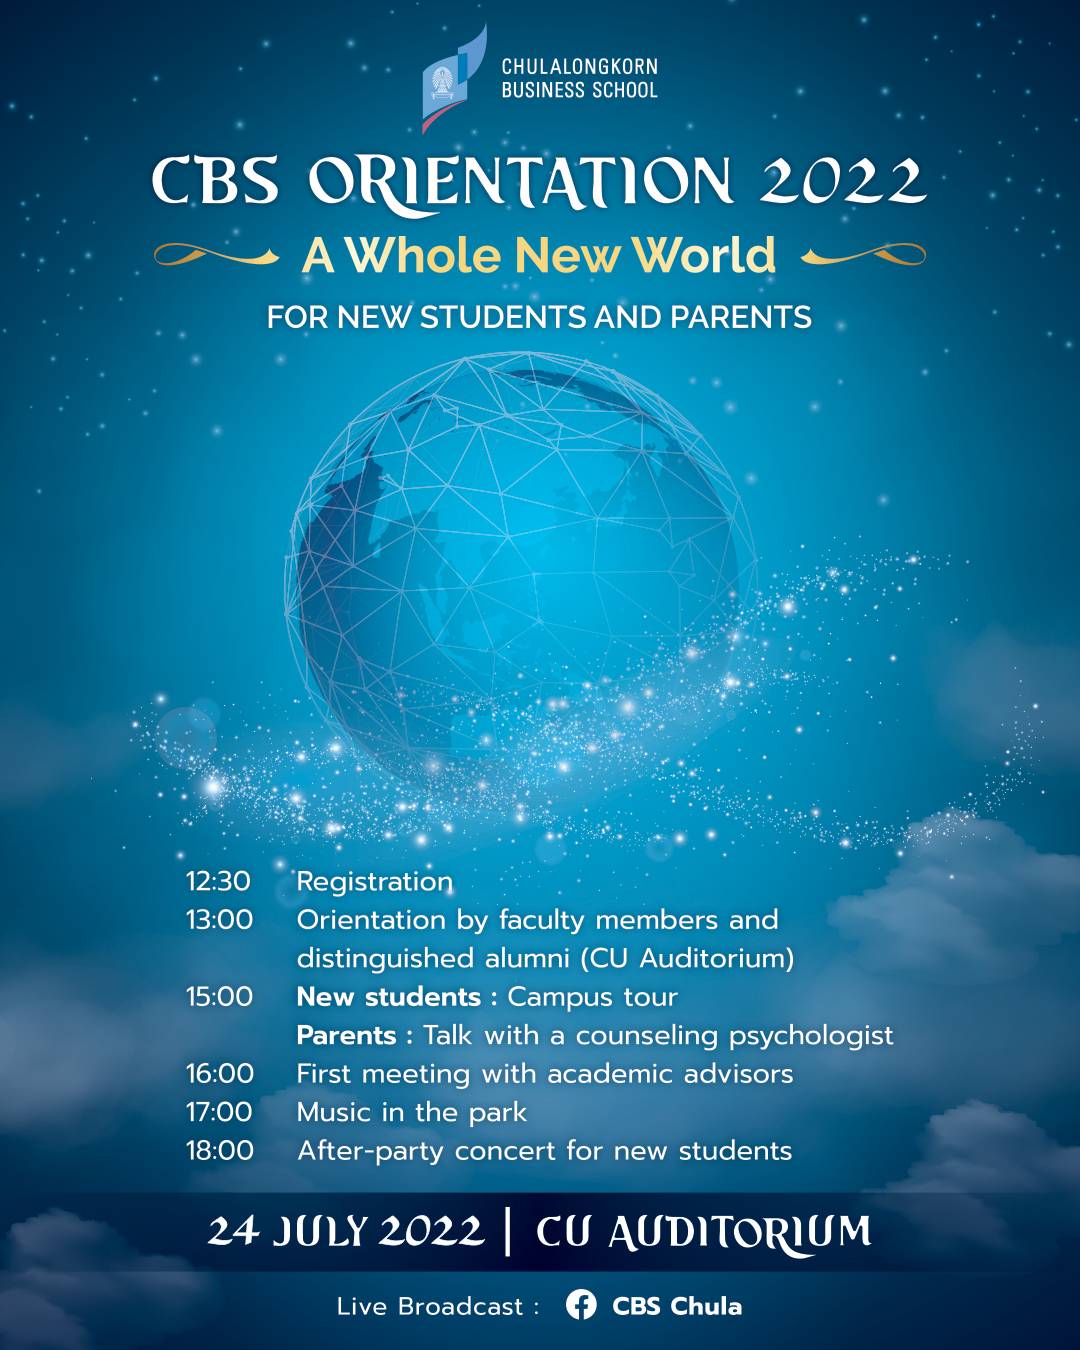 เรียนเชิญนิสิตใหม่และผู้ปกครองนิสิตใหม่ เข้าร่วมงาน “CBS ORIENTATION 2022: A Whole New World” ในวันที่ 24 กรกฎาคม 2565 เวลา 13.00 – 18.00 น.  ณ หอประชุมจุฬาลงกรณ์มหาวิทยาลัย